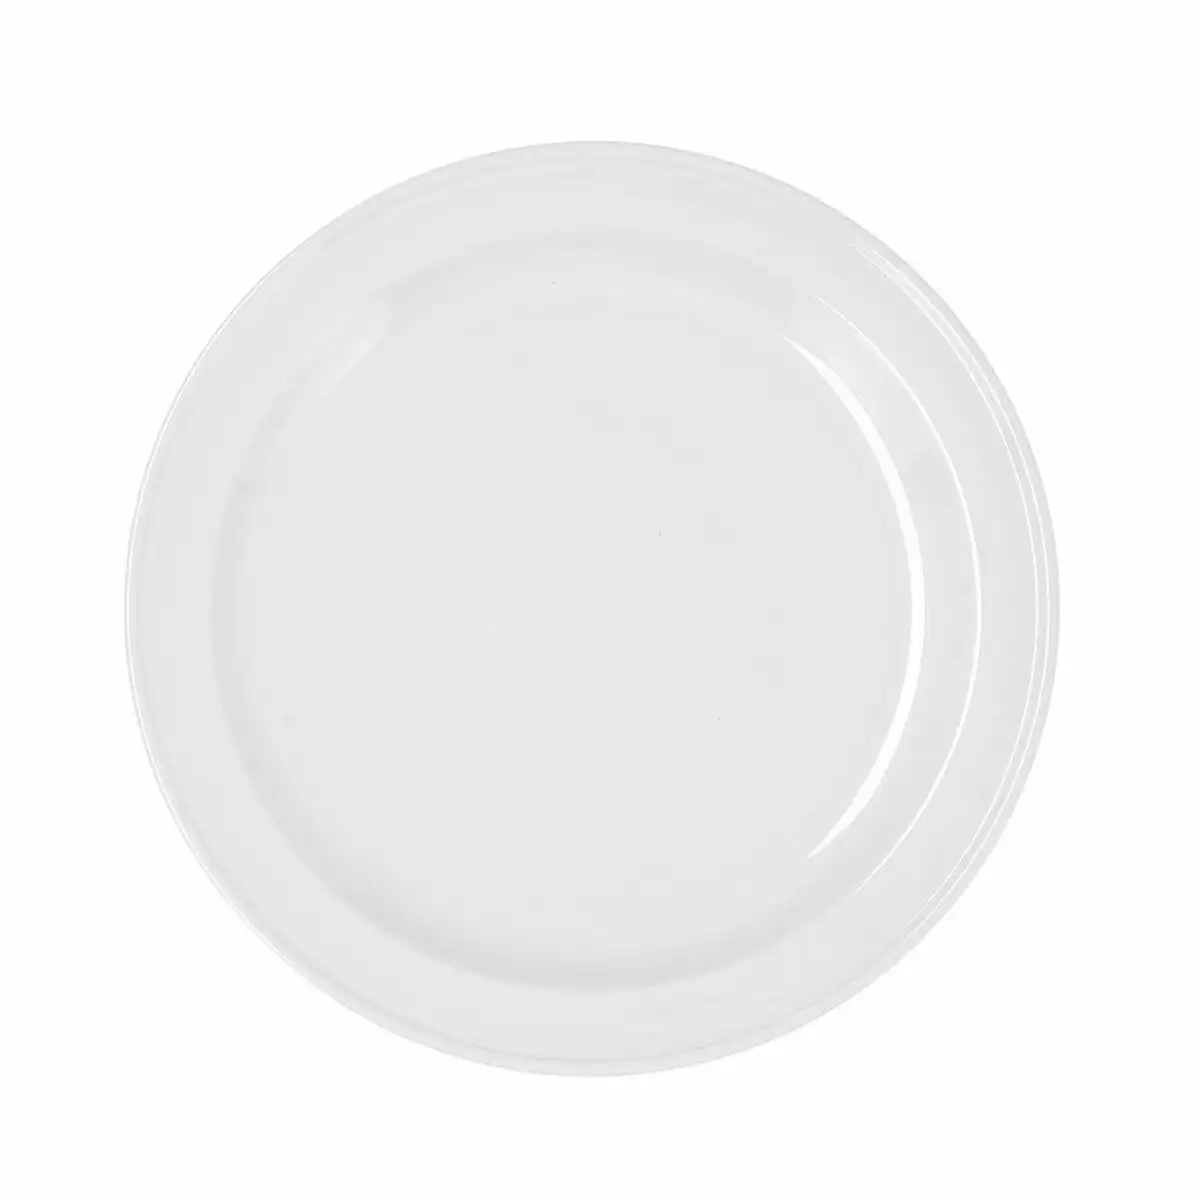 Assiette plate bidasoa glacial ceramique blanc o 26 cm pack 4x _8180. DIAYTAR SENEGAL - Où Choisir est un Acte de Création. Naviguez à travers notre plateforme et choisissez des produits qui complètent votre histoire personnelle.